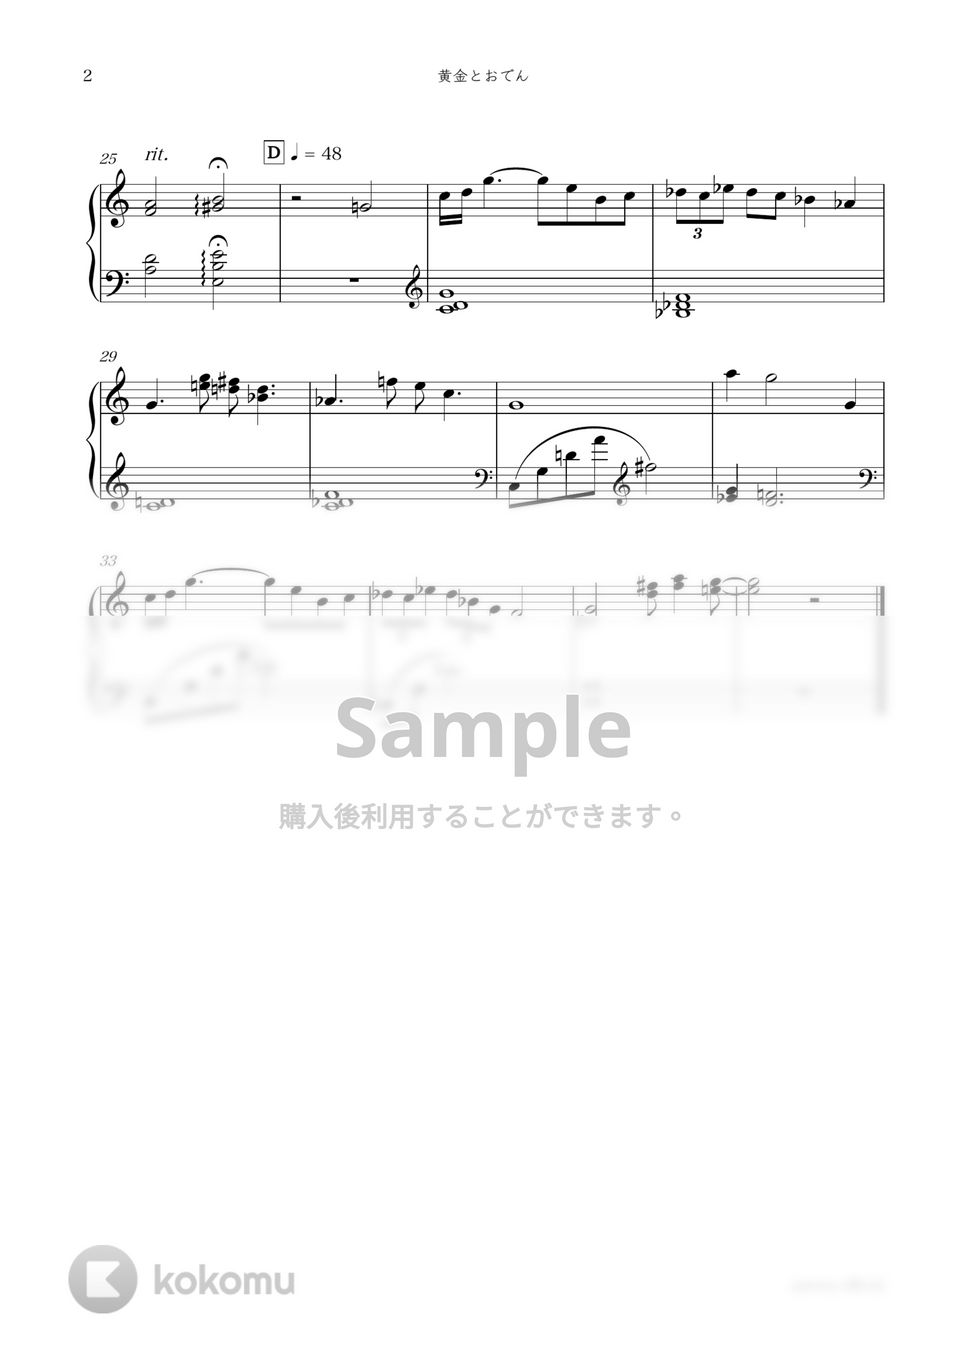 アニメ『ONE PIECE』OST - 黄金とおでん by sammy